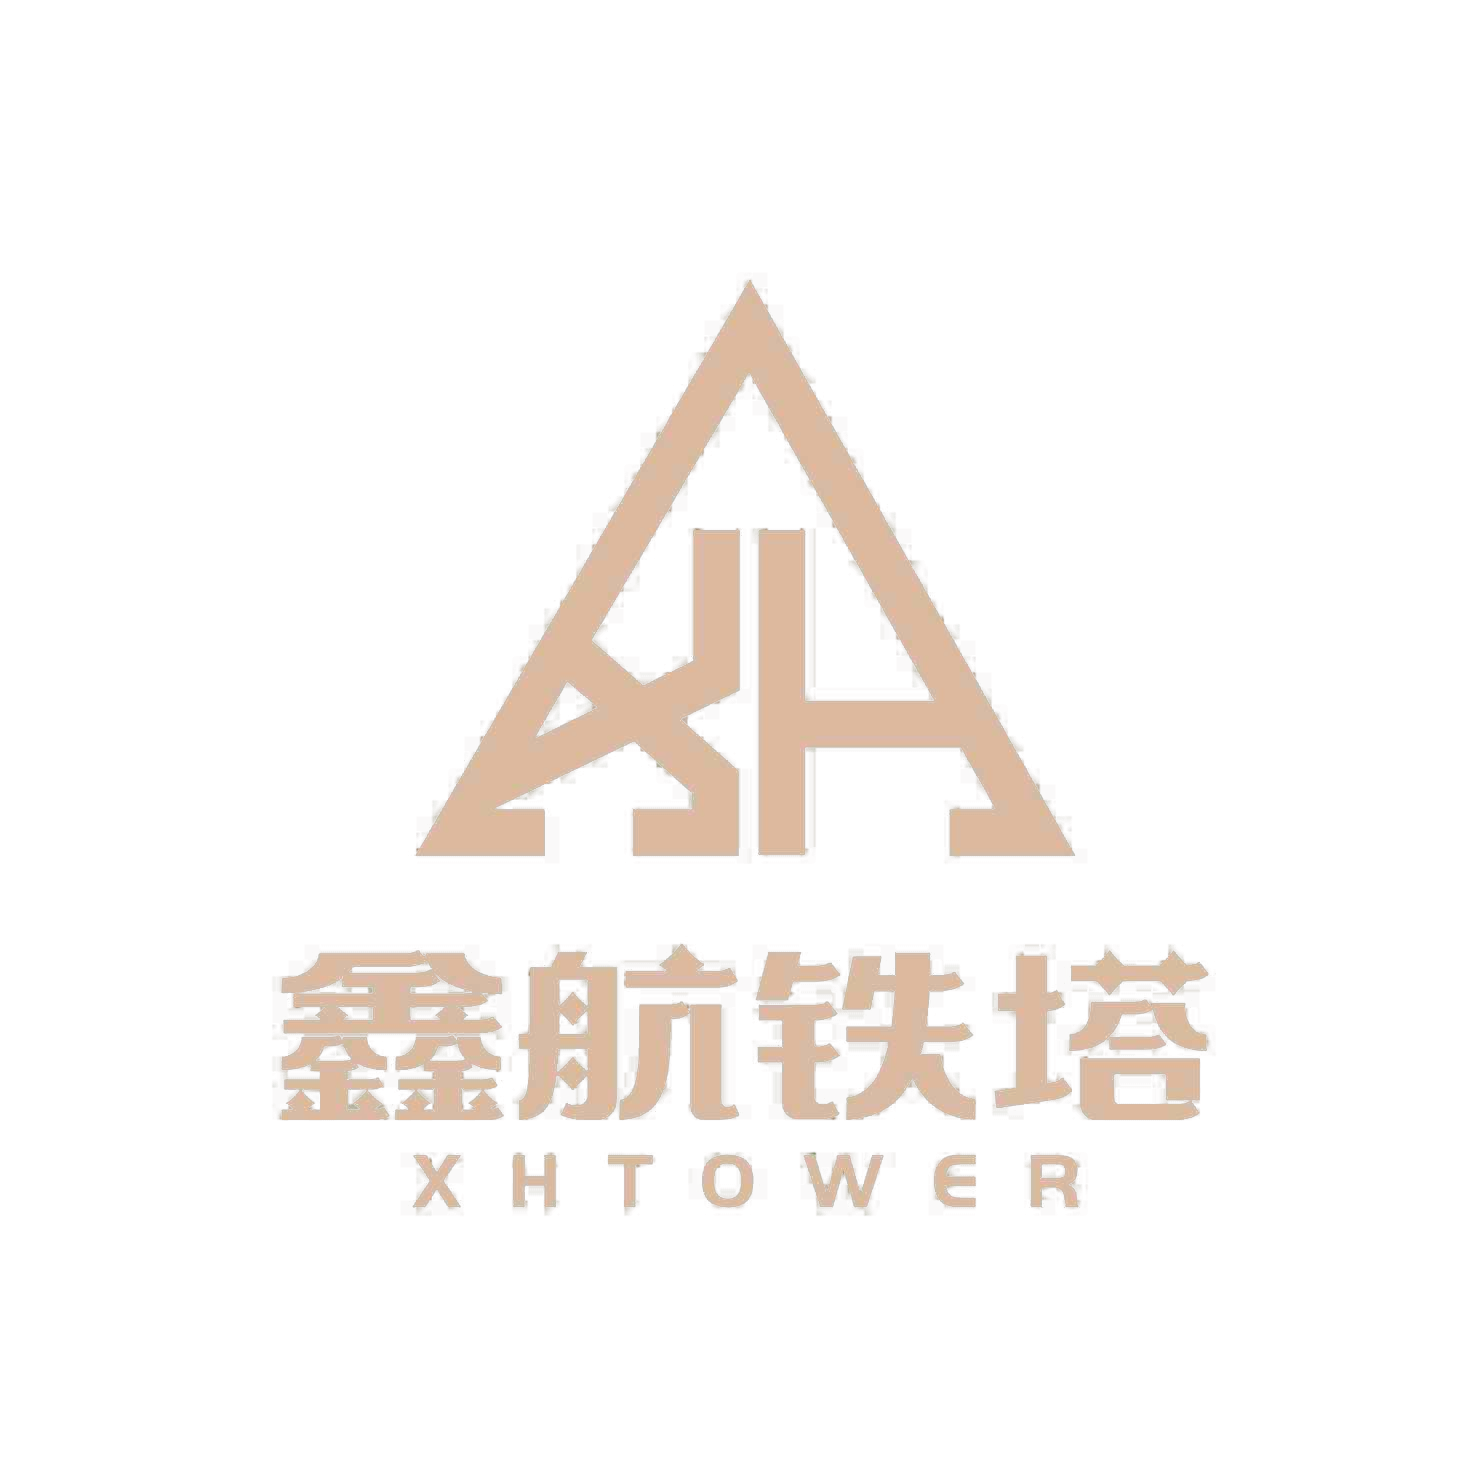 Xinhang Tower Technology Co, Ltd.